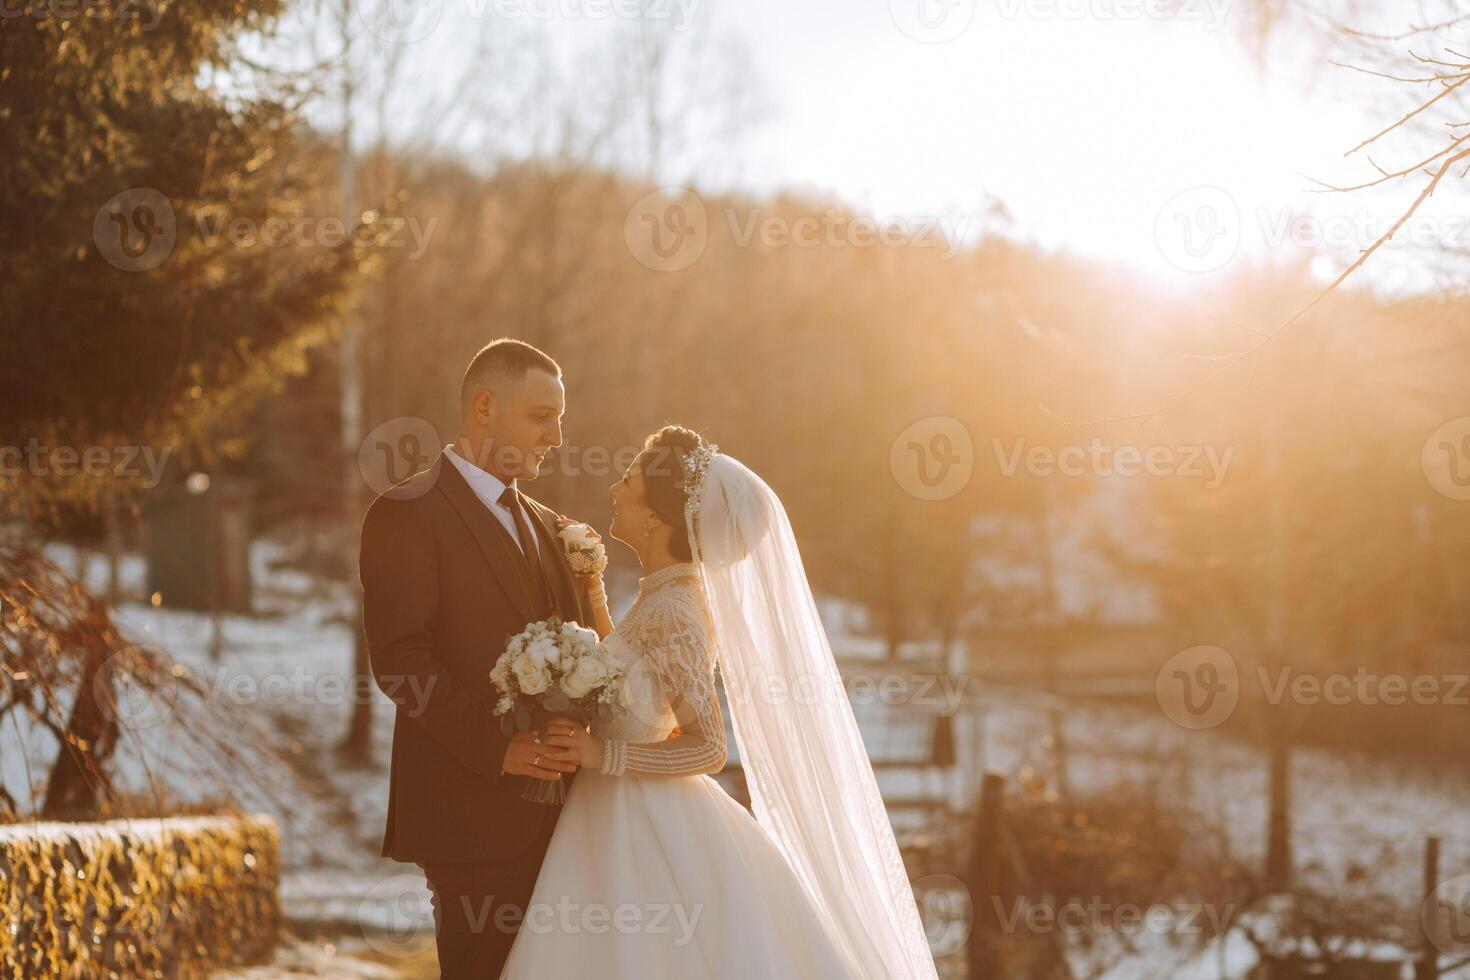 Boda retrato de el novia y novio. invierno caminar en naturaleza. el novia abraza el acicalar, mirando a cada otro. foto